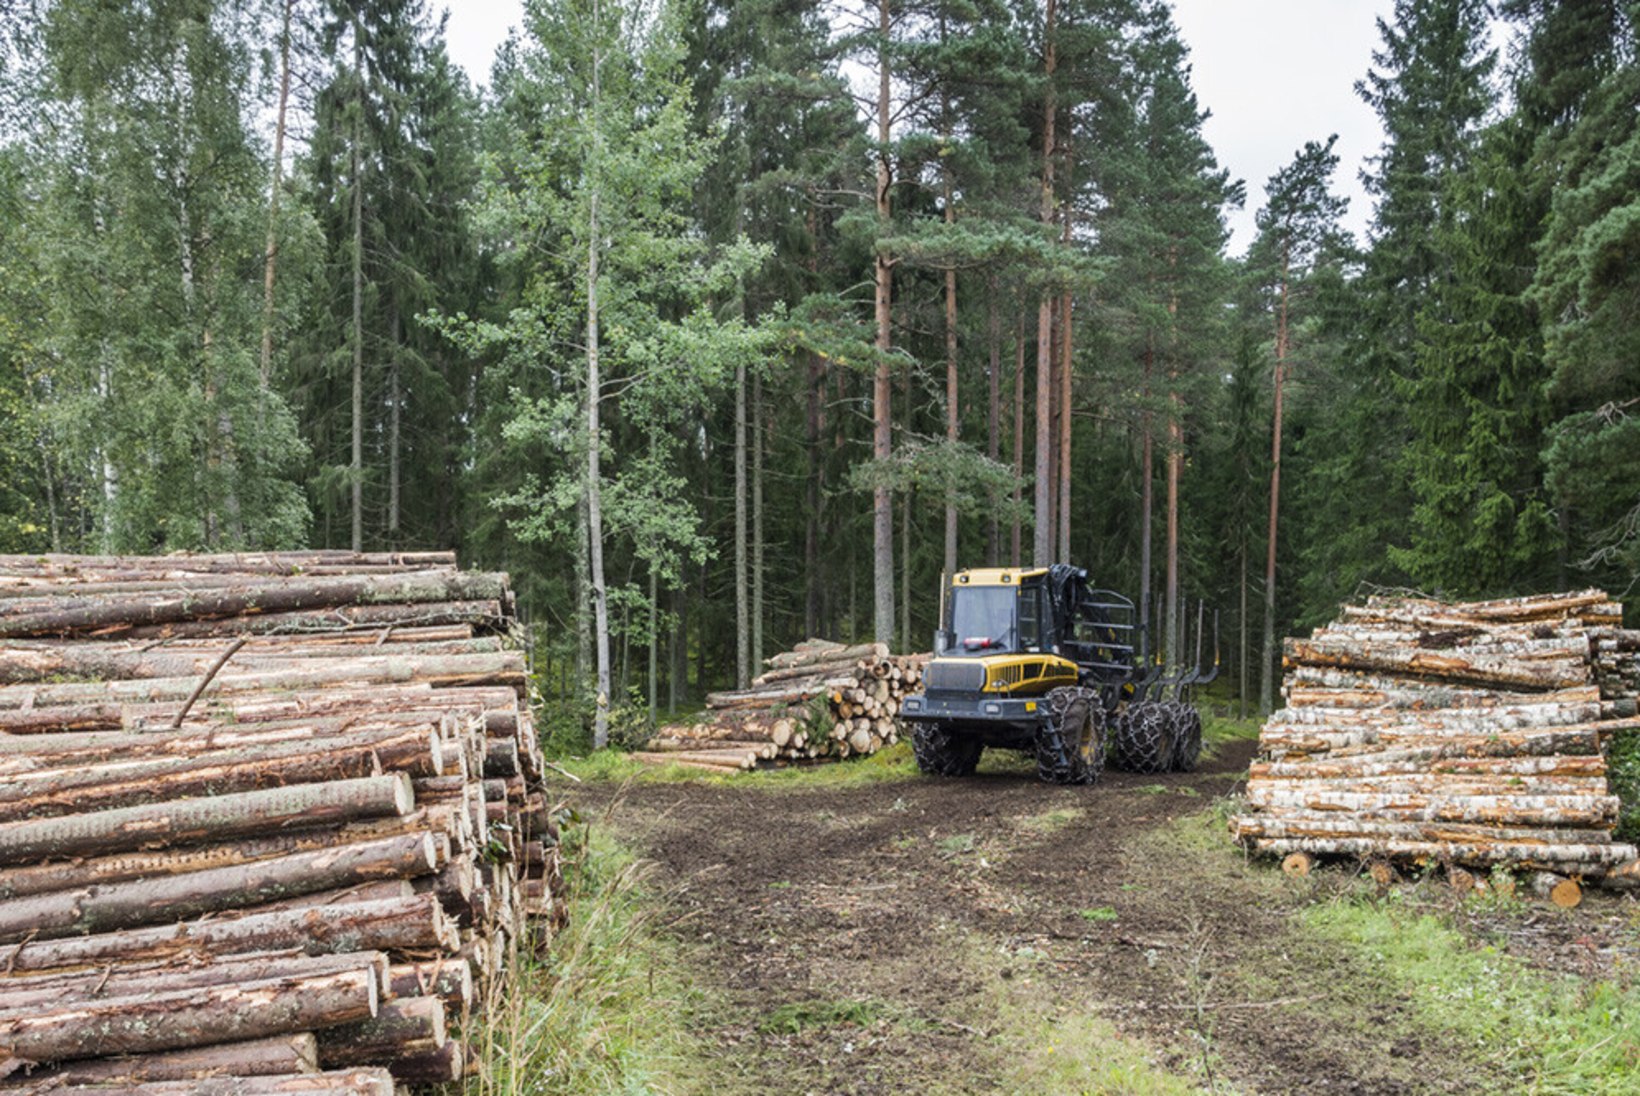 Metsa järgulisest majandamisest ja jätkukasvatuse raietest Soome näitel. II osa